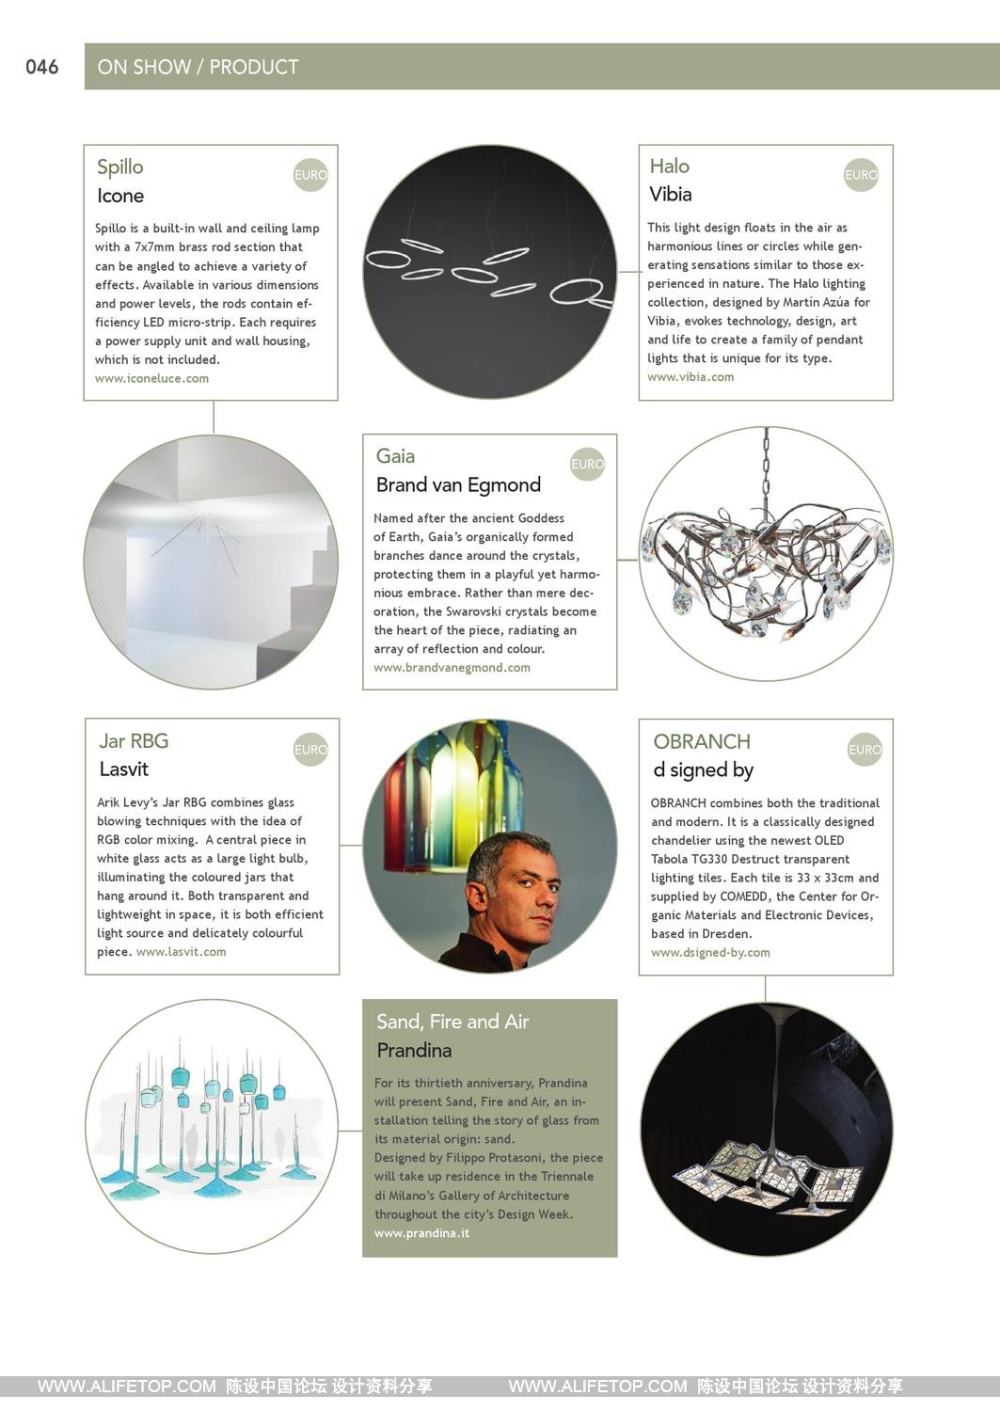 darc-2灯具照明设计杂志_darc-2灯具照明设计杂志 (46).jpg